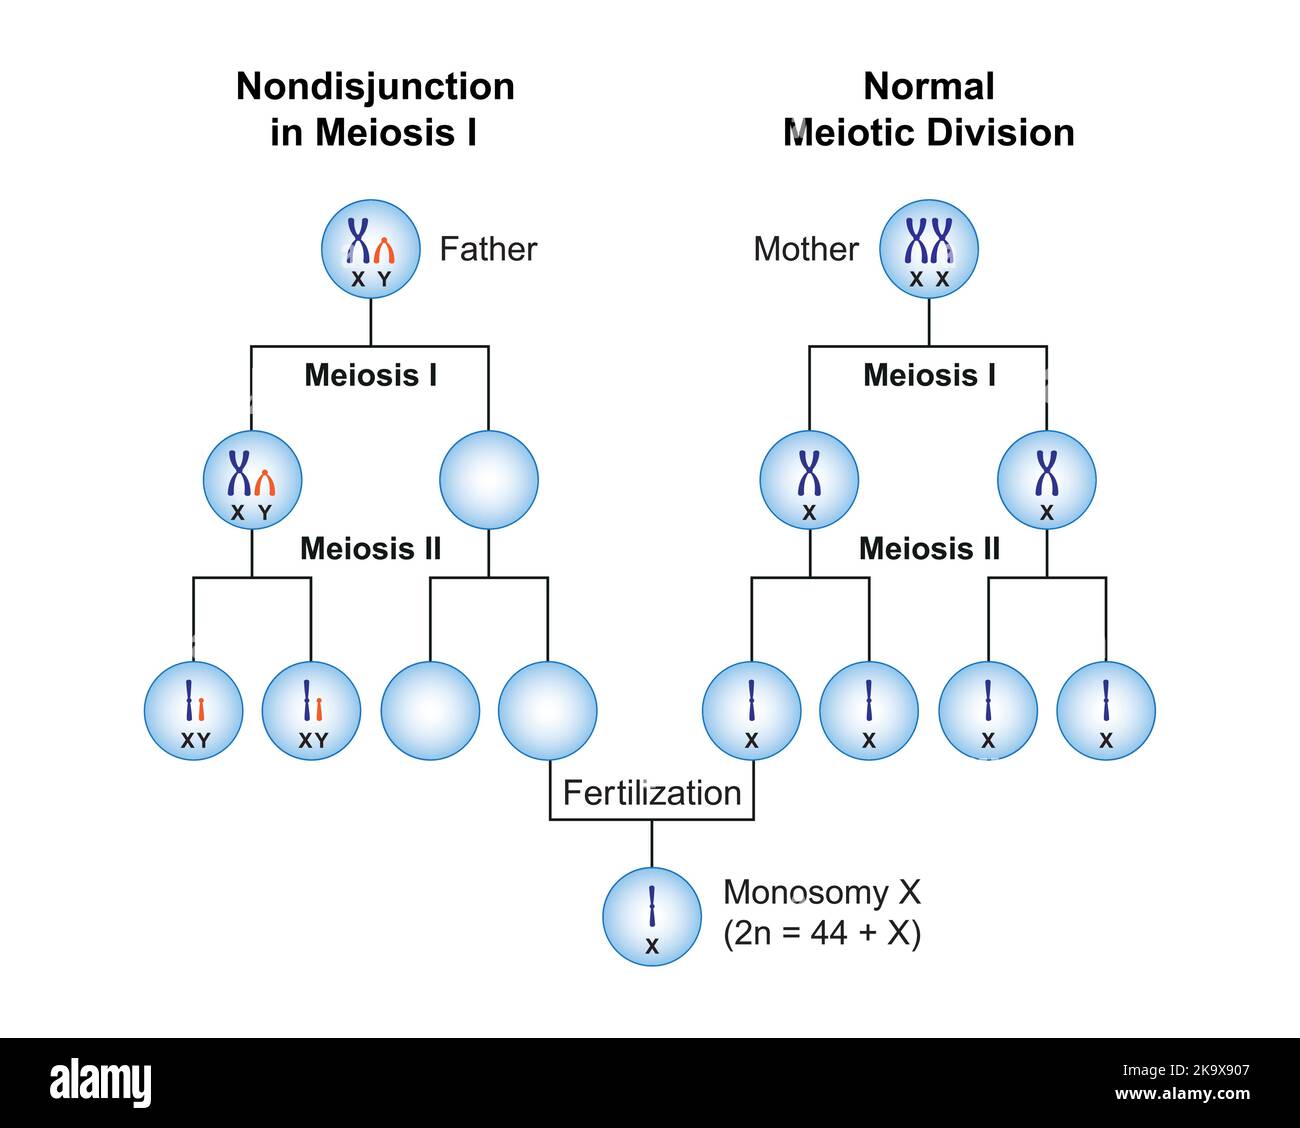 Progettazione scientifica della non-giunzione nella monosomia X (sindrome di Turner) . Simboli colorati. Illustrazione vettoriale. Illustrazione Vettoriale